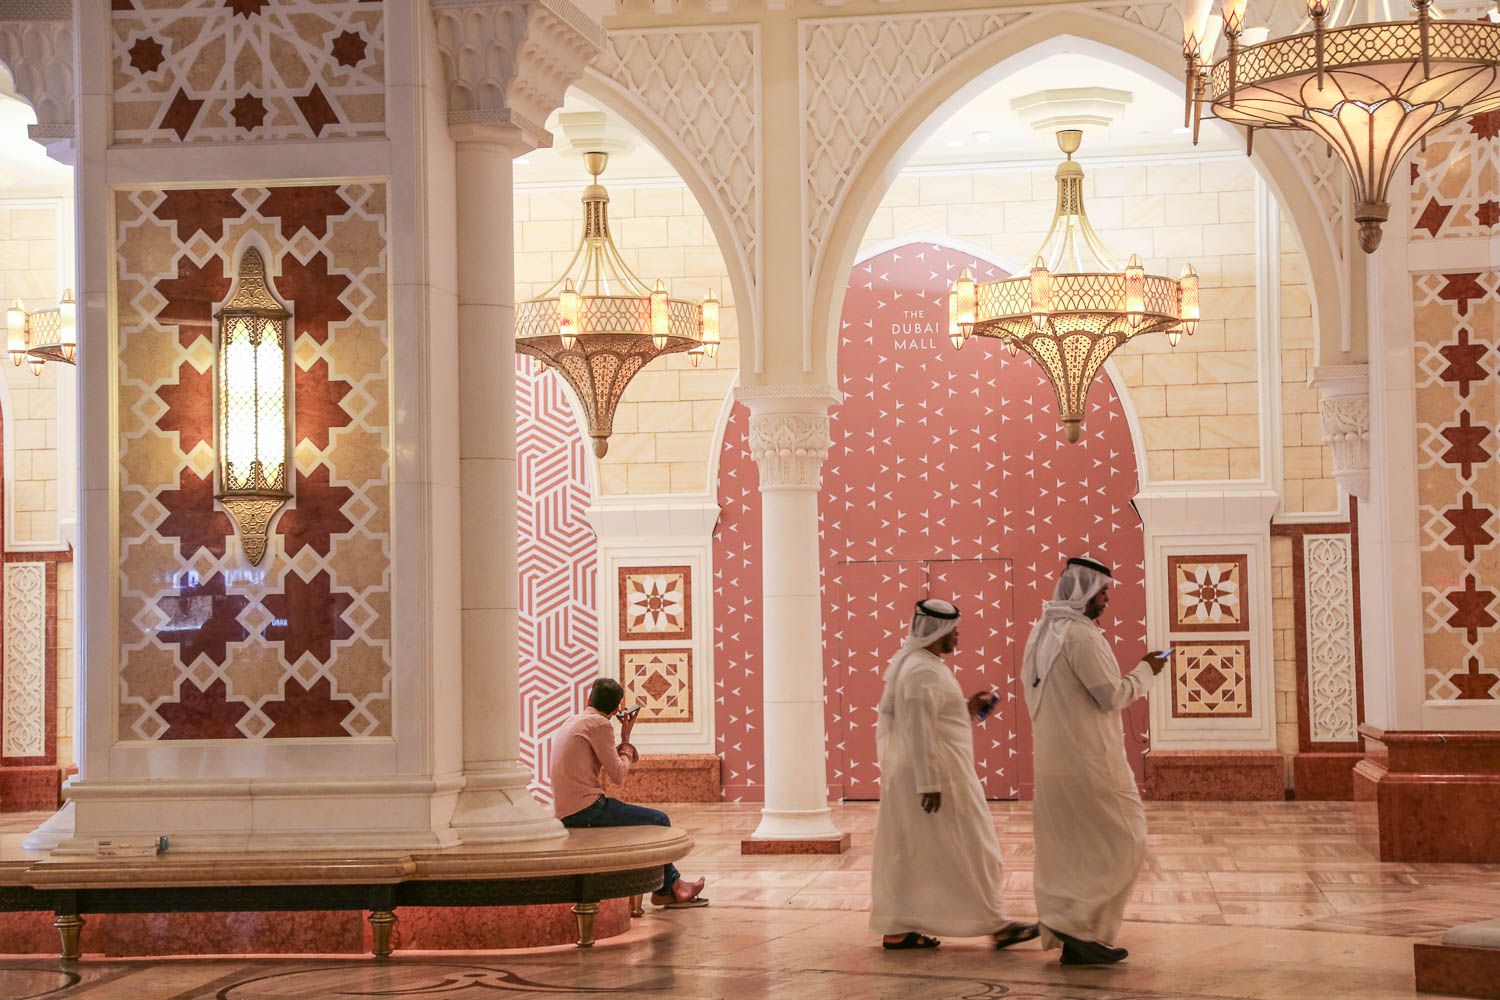 Ensimmäistä kertaa Dubaihin? 12 nähtävyyttä ja ravintolasuosikit